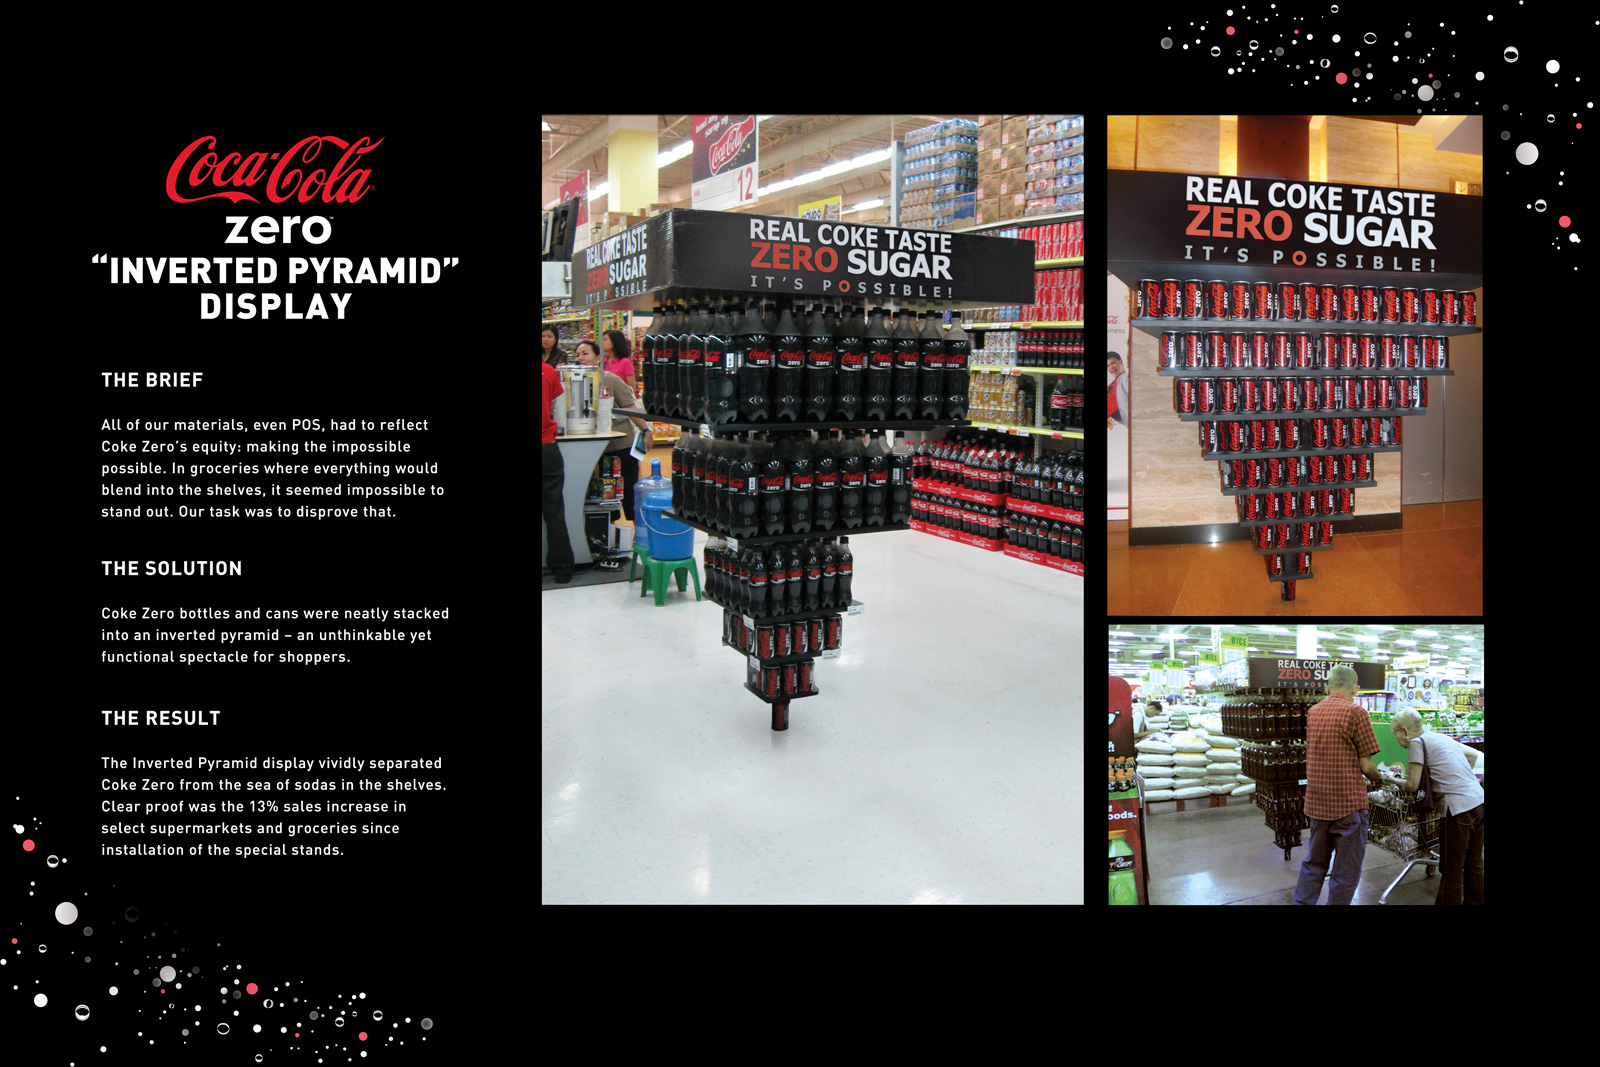 Coca-Cola Zero Inverted Pyramid